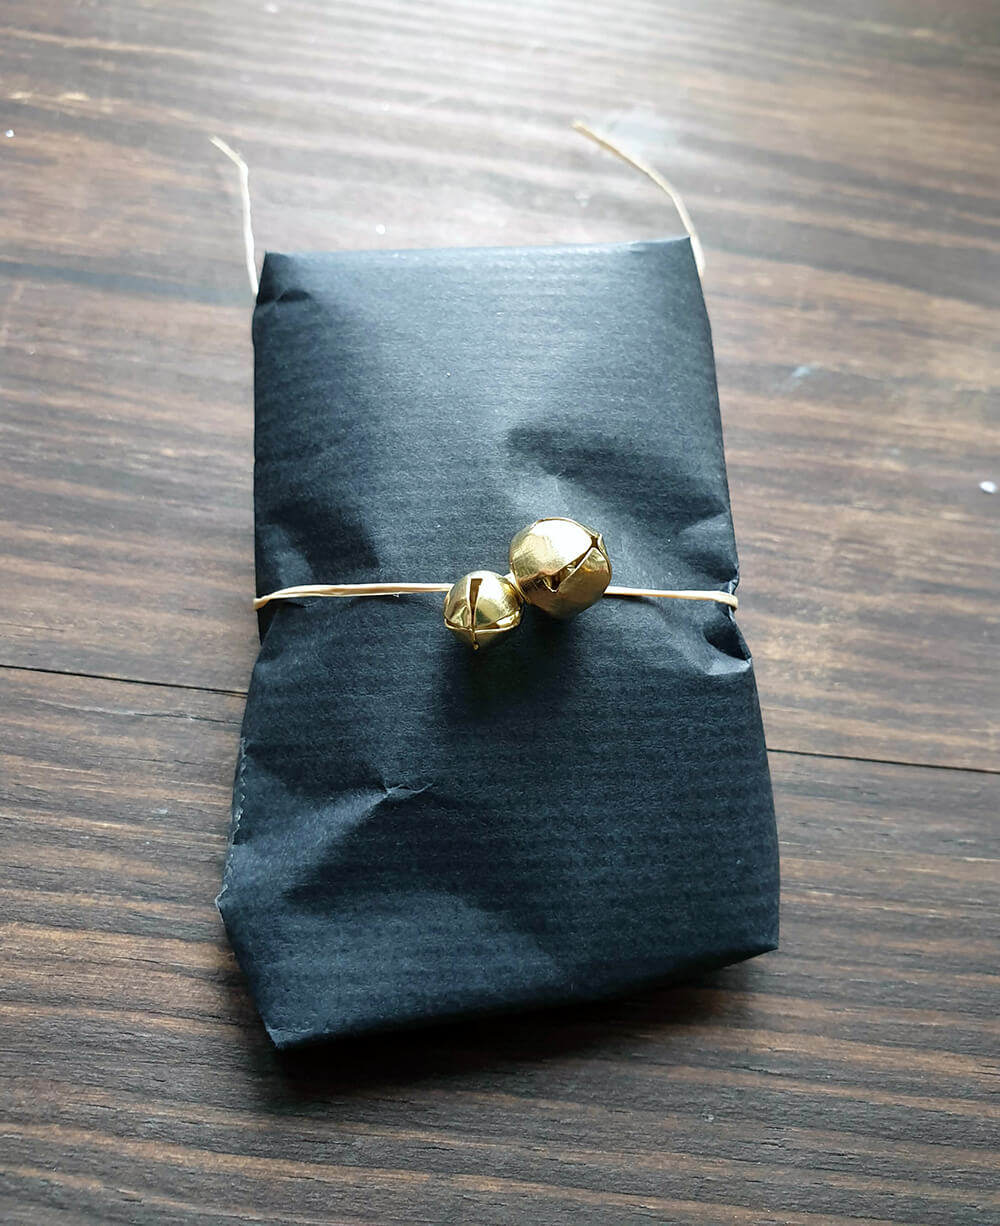 petit cadeau de noel emballé avec du papier kraft noir de la ficelle et des grelots - 7 idées d'emballage cadeau zéro déchet faciles à reproduire